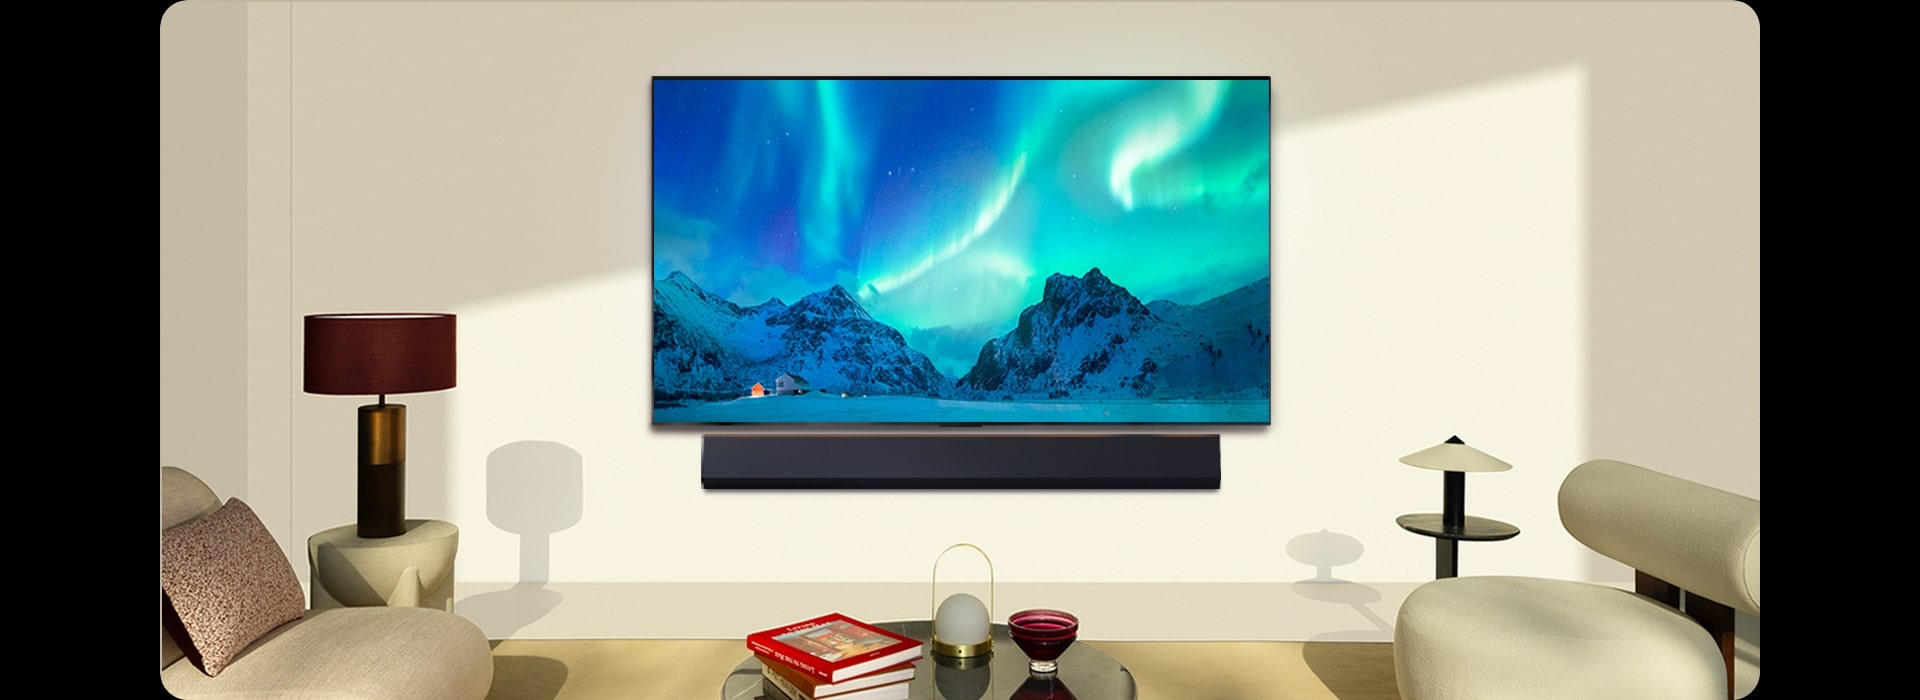 Un TV LG OLED et une barre de son LG dans un espace de vie moderne de jour. L’image à l’écran d’une aurore boréale est affichée, avec des niveaux de luminosité idéals.